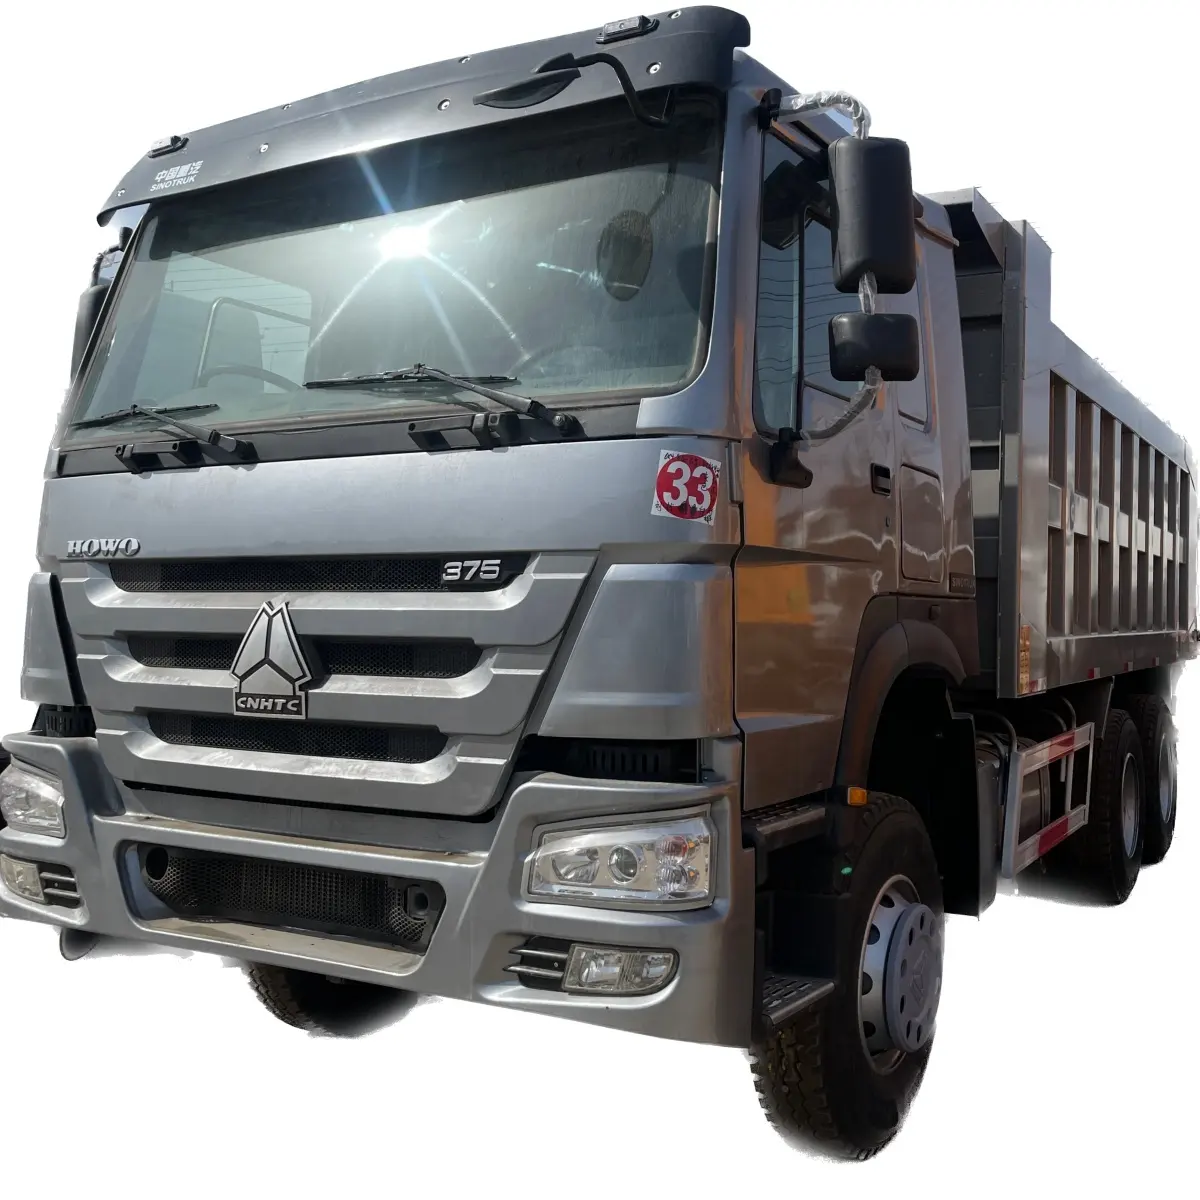 Penawaran khusus truk sampah Dump Truck 375 otomatis digunakan kemudi tangan kanan China Howo Dump Truck Euro 3